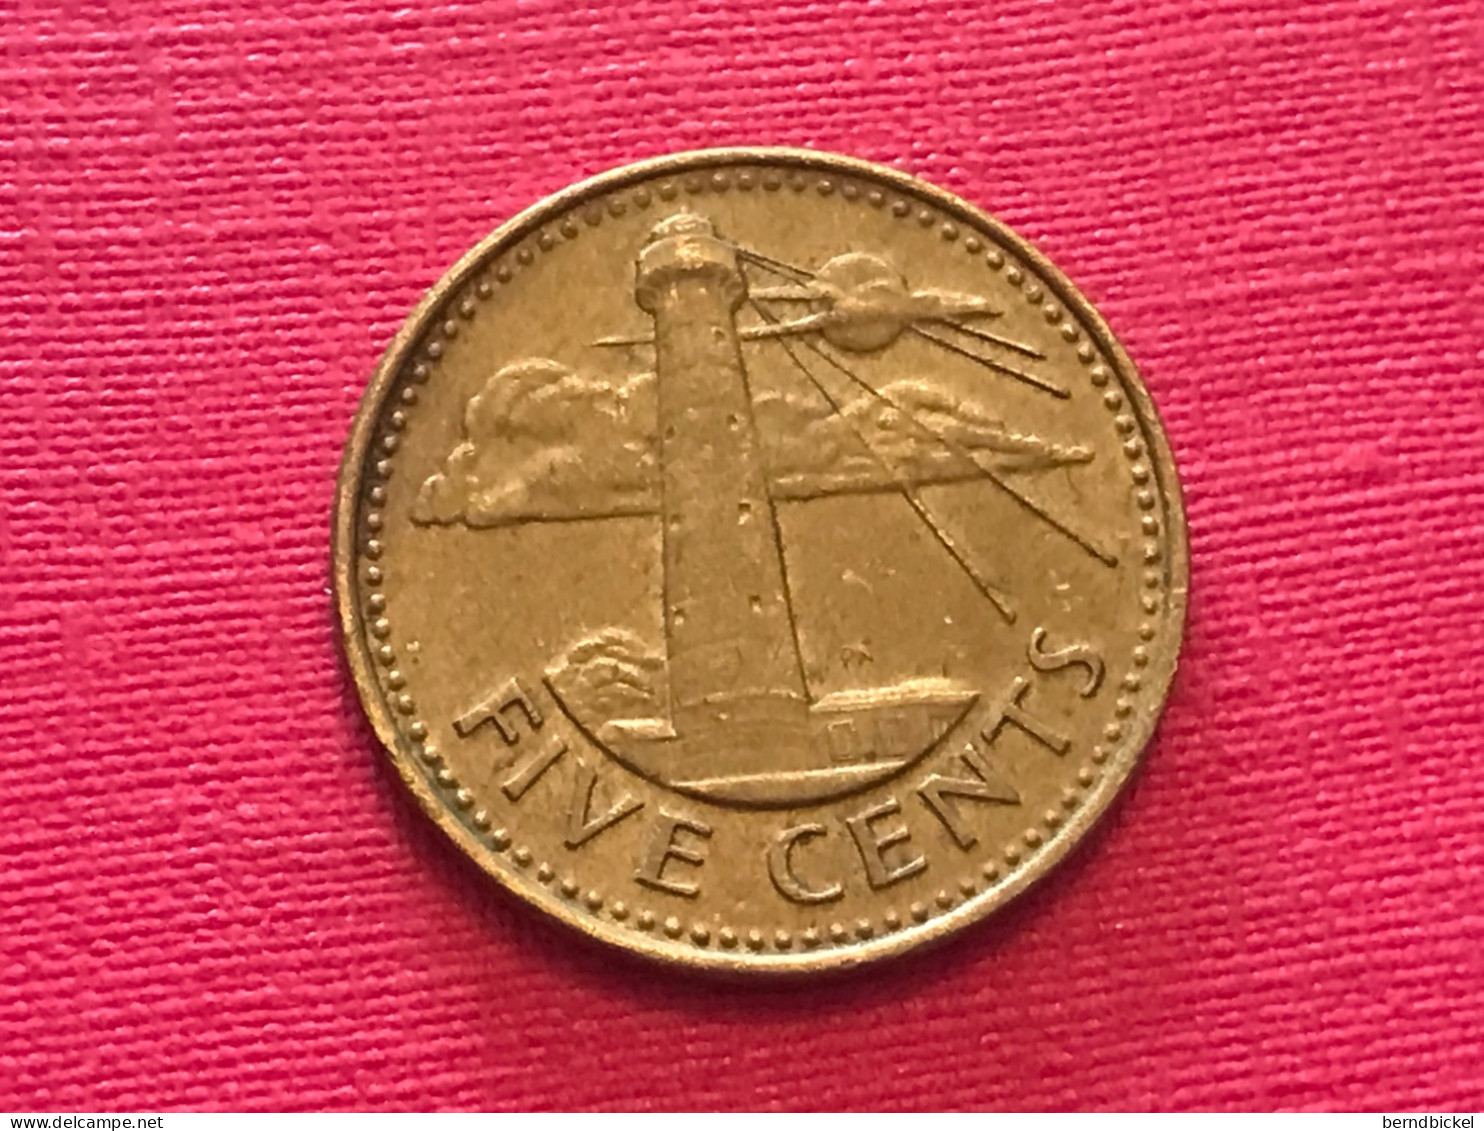 Münze Münzen Umlaufmünze Barbados 5 Cents 1988 - Barbados